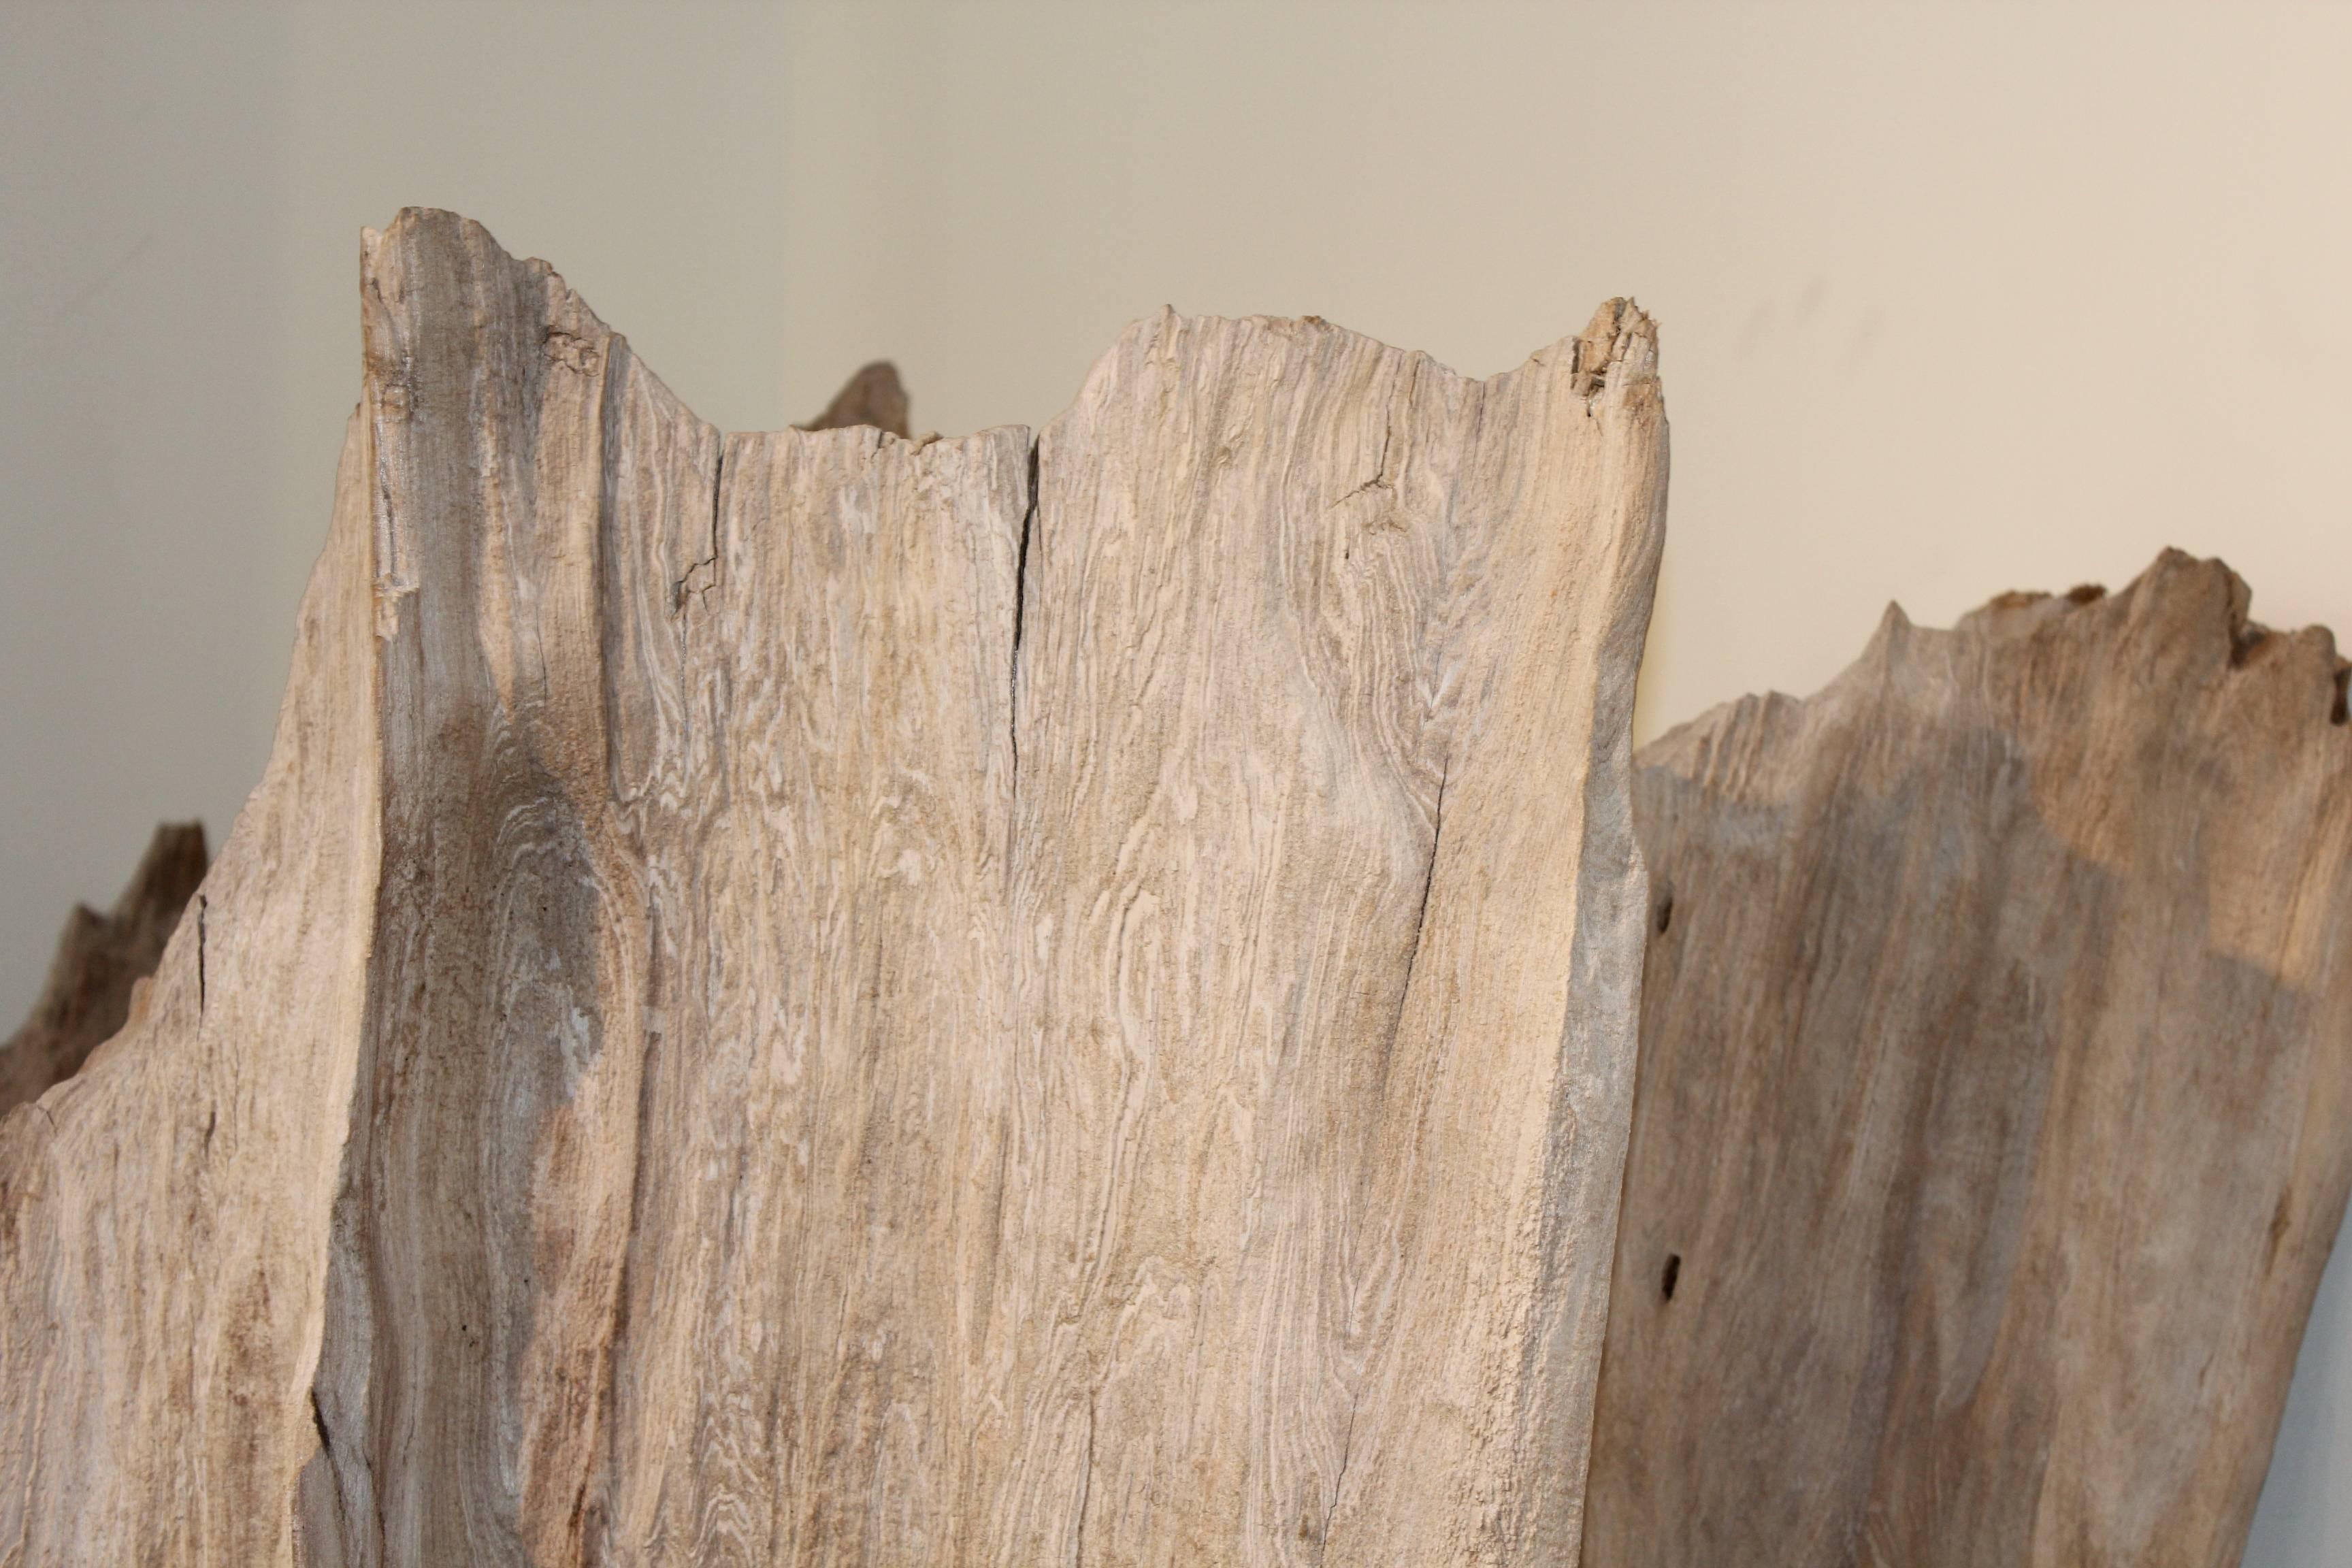 Organic driftwood as sculpture.